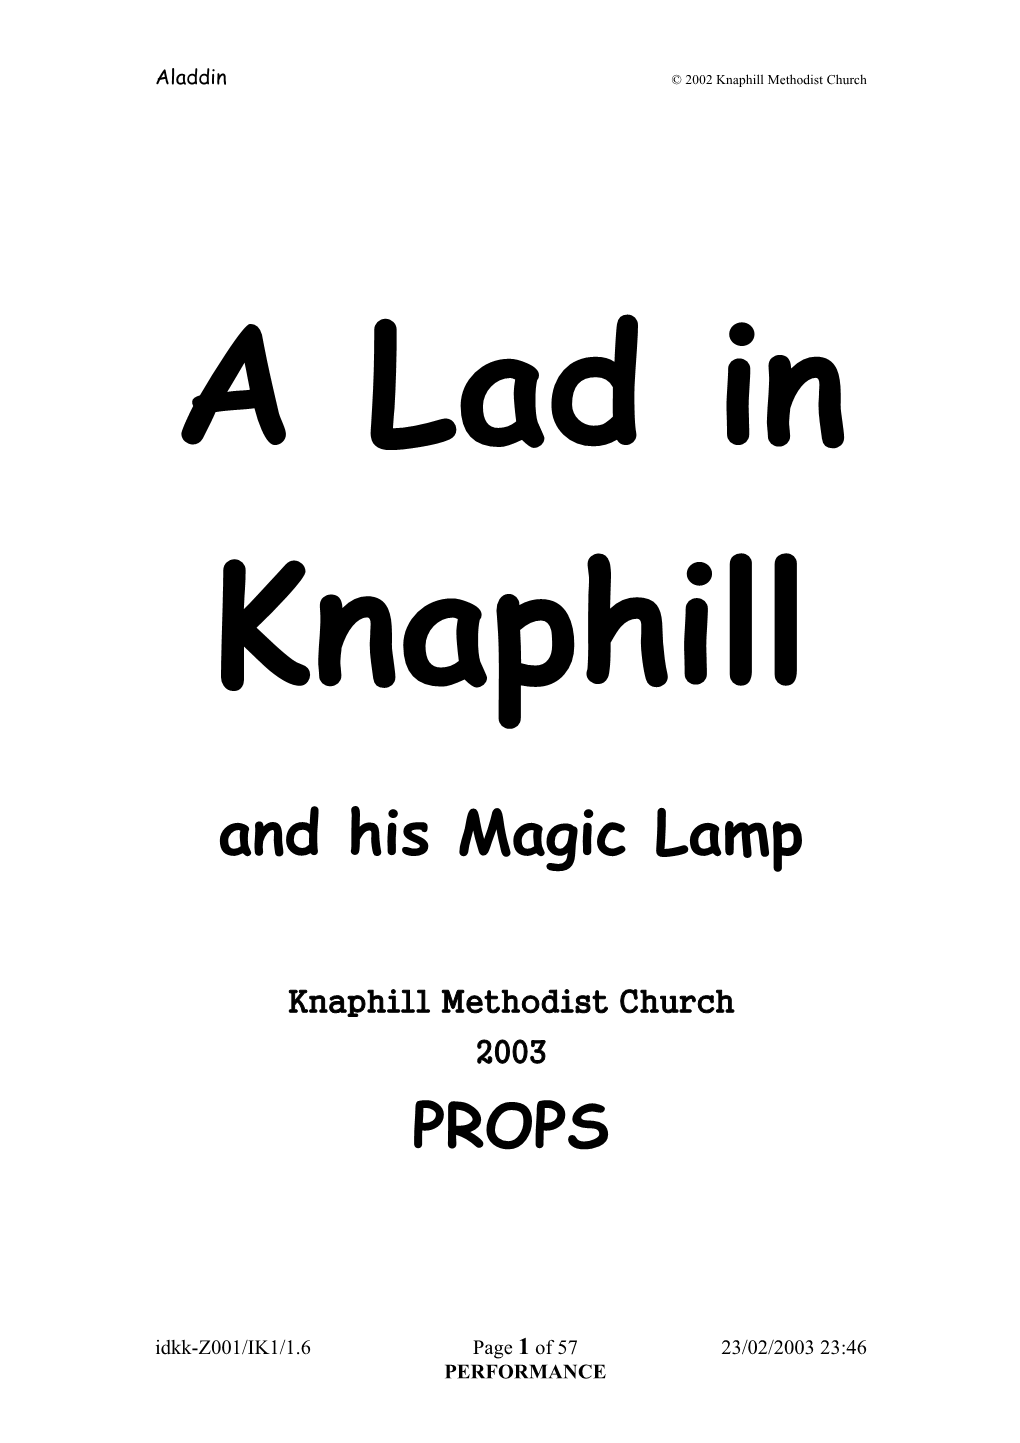 And His Magic Lamp